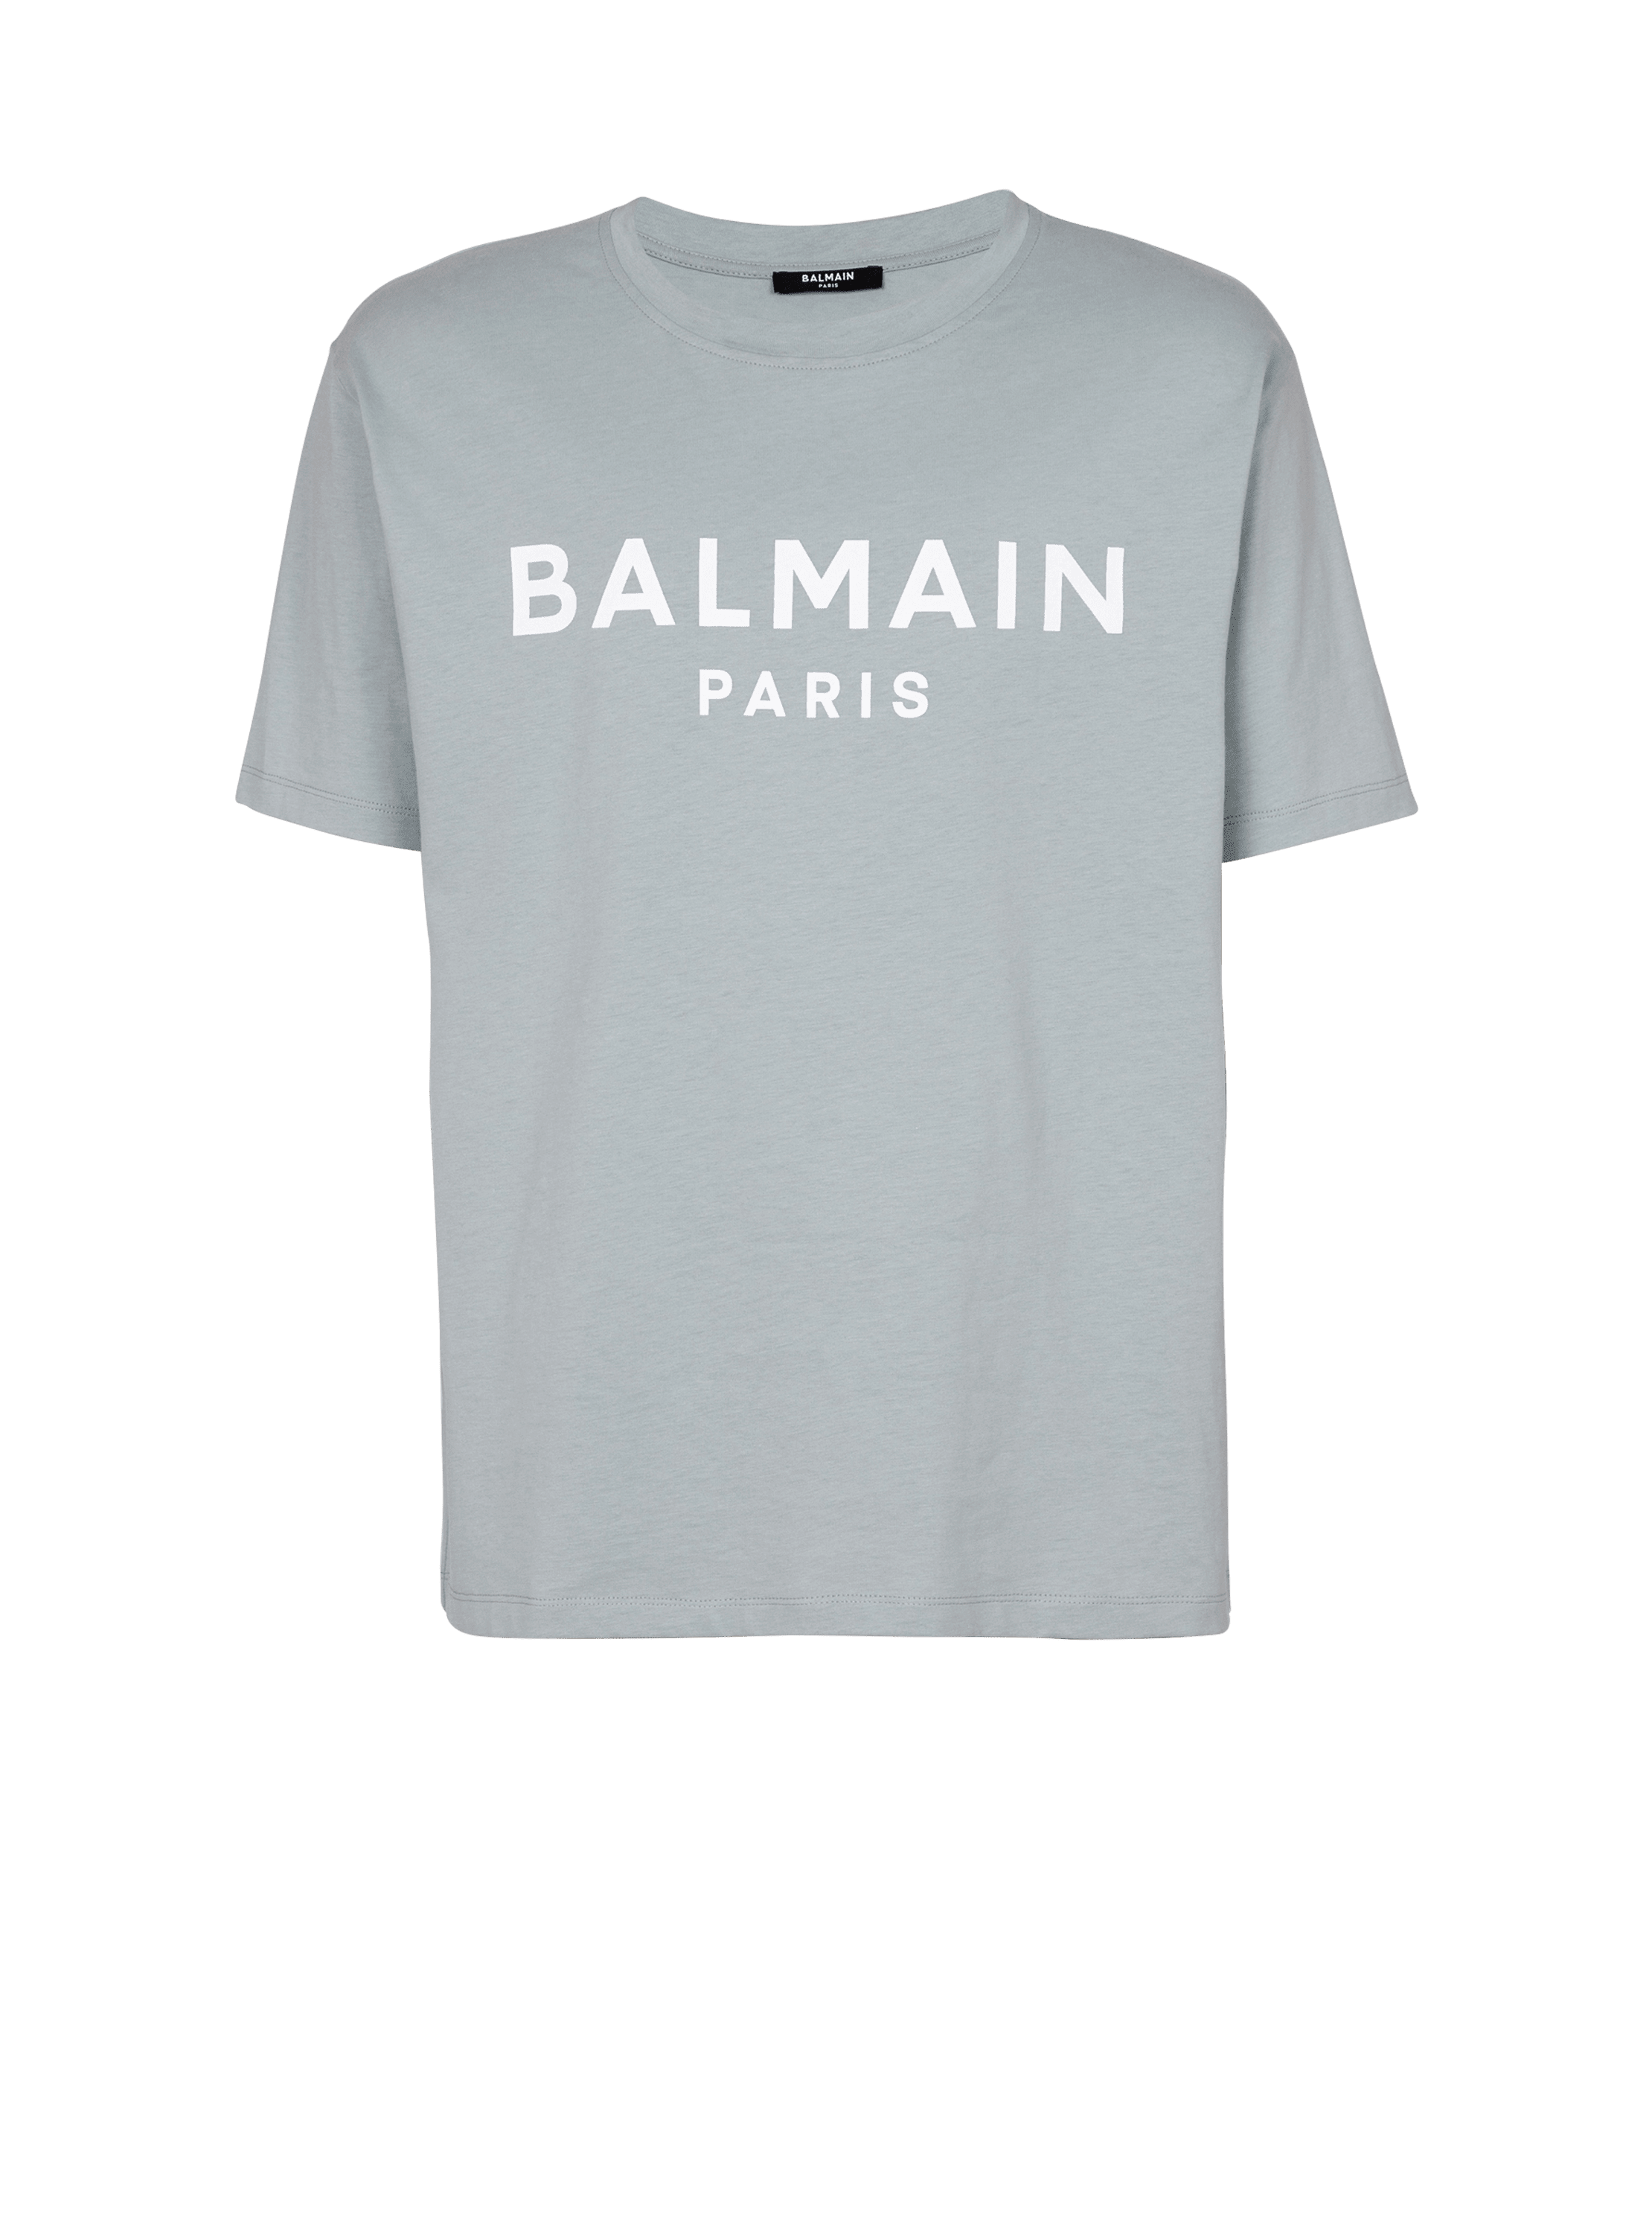 Kurzärmeliges T-Shirt mit Balmain Paris-Print